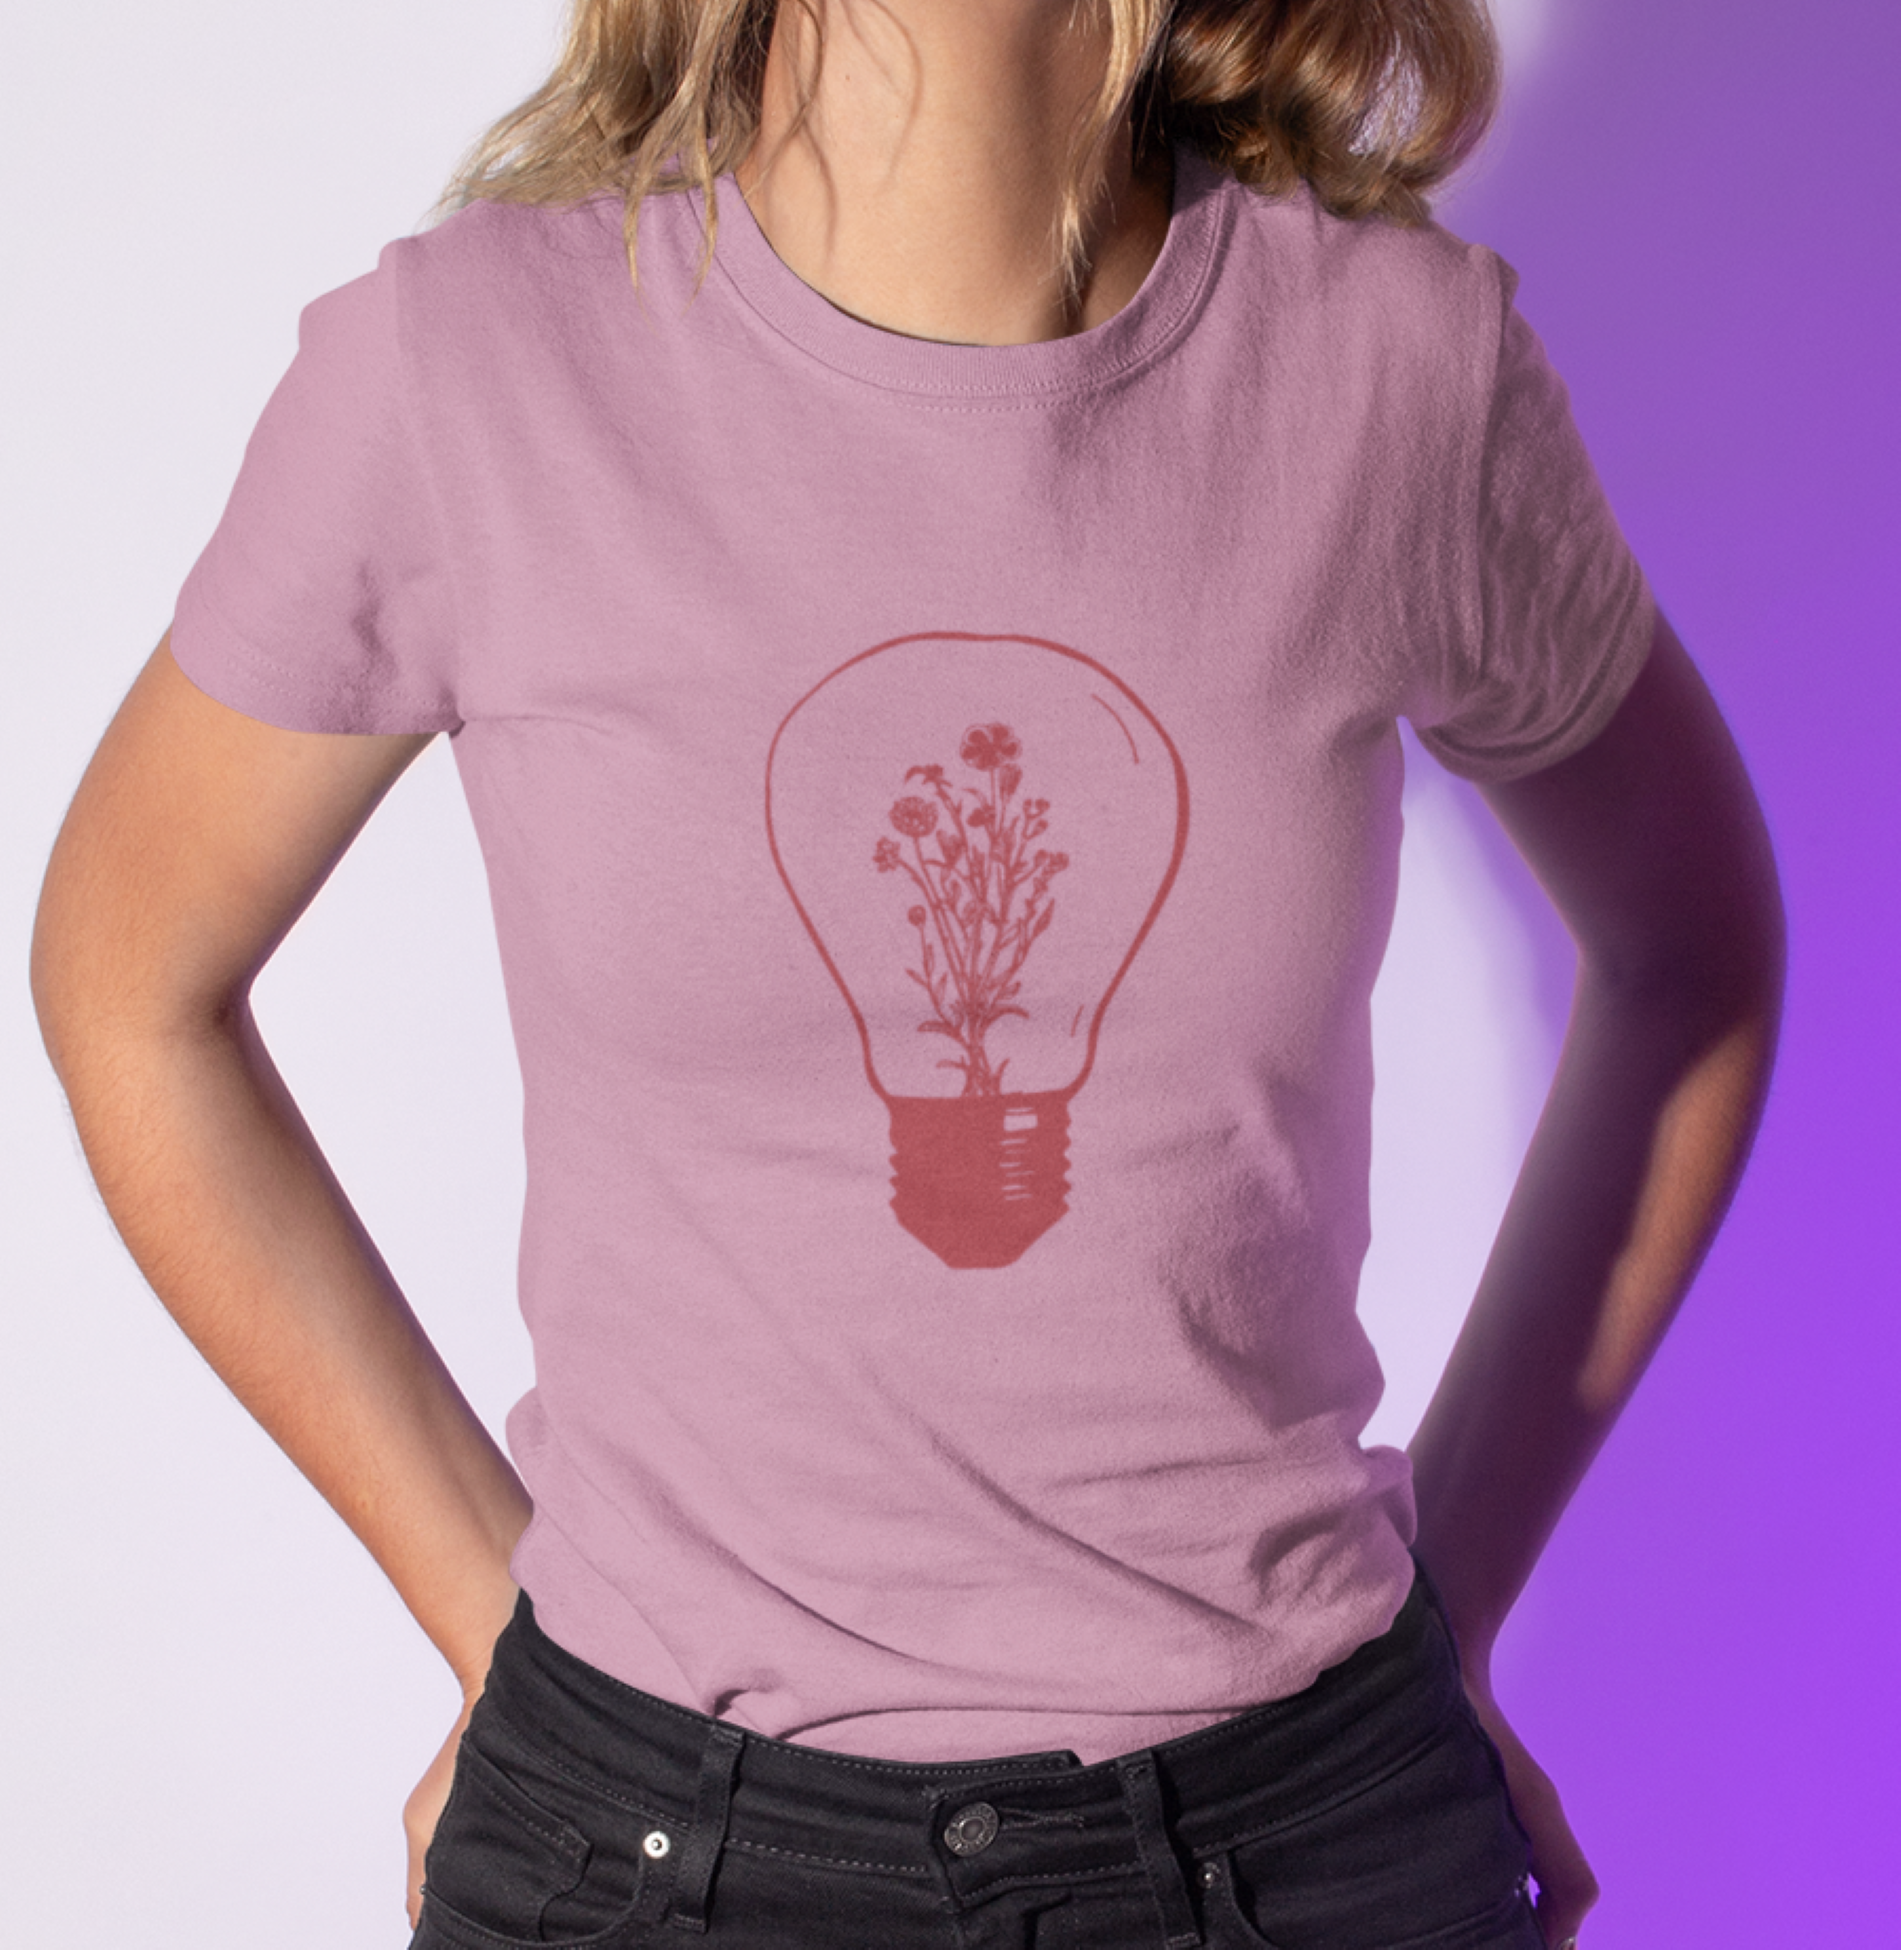 Floral bulb - T-shirt - Woman - Unisex